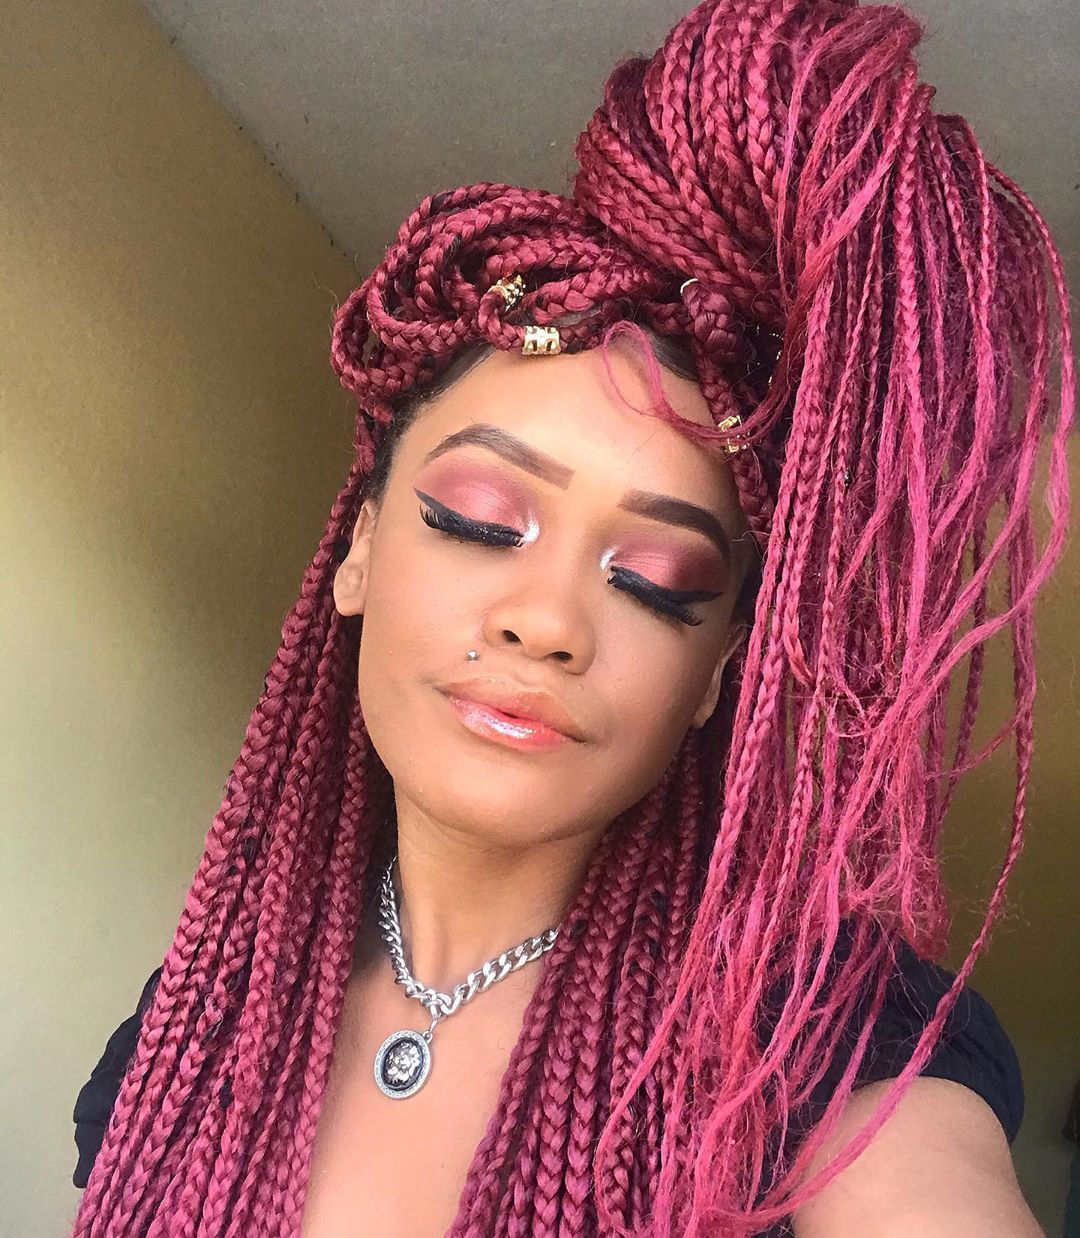 Imagem com box braids rosa em cabelo longo